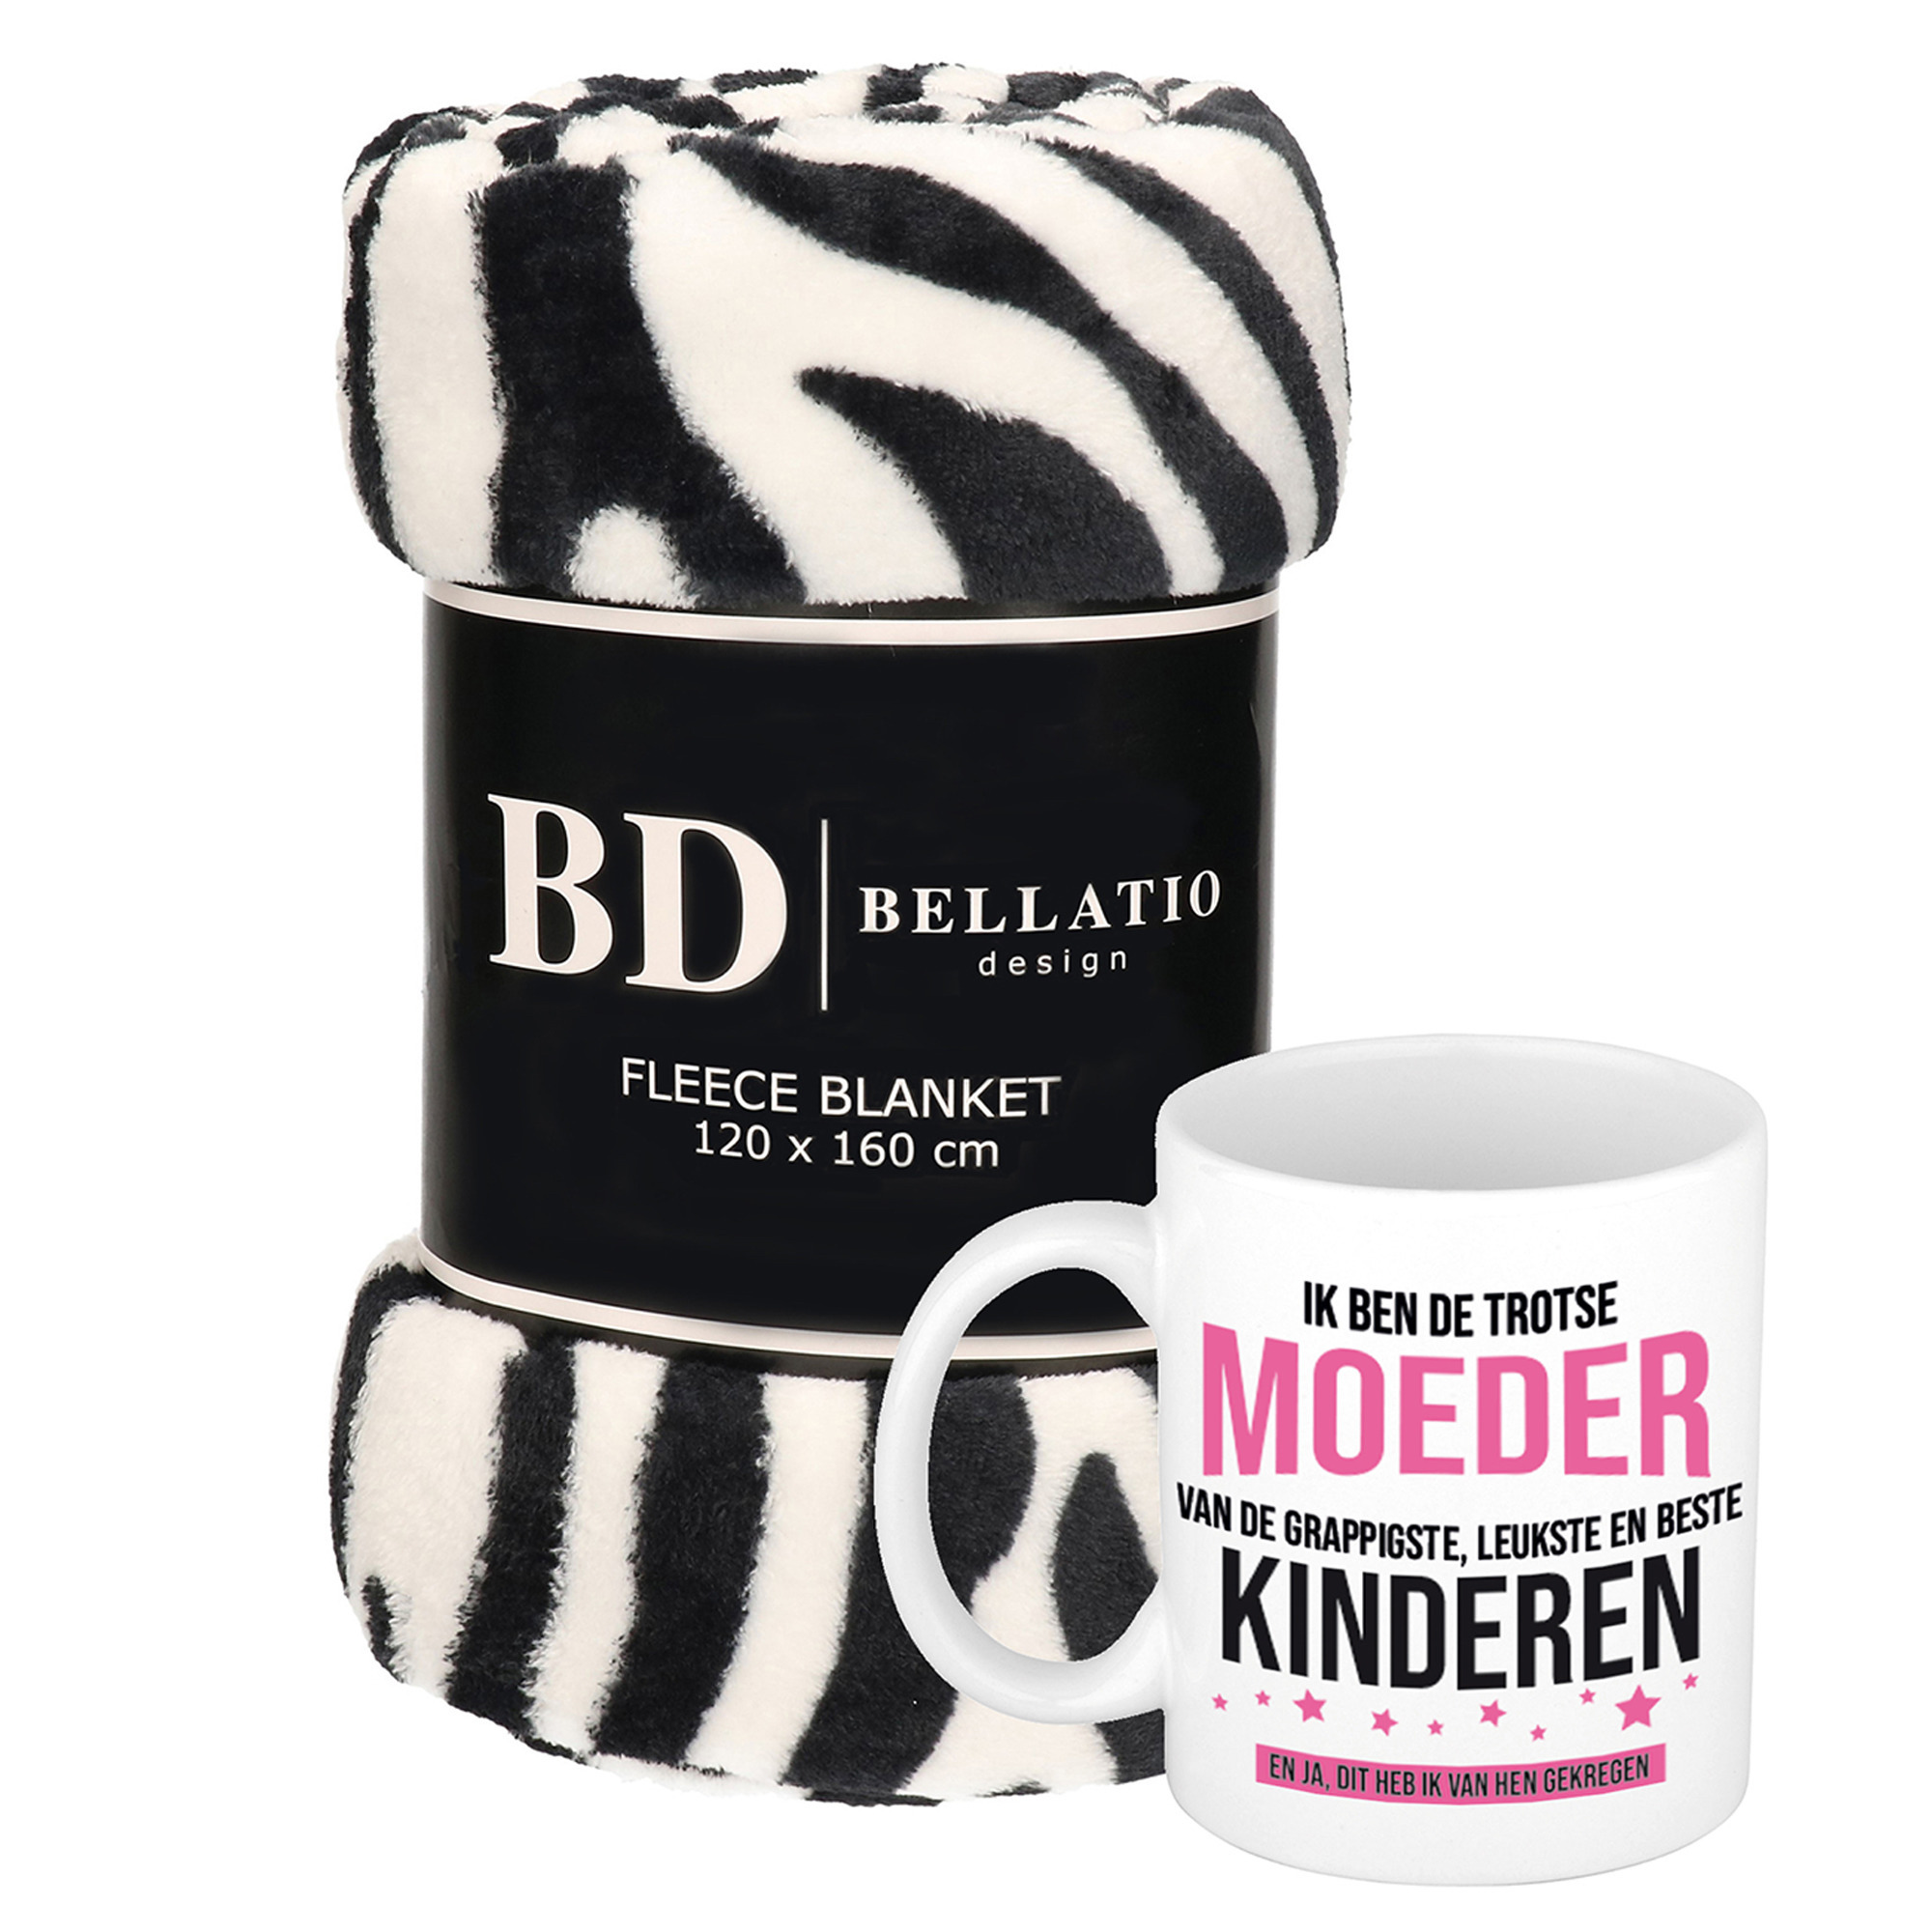 Cadeau moeder set - Fleece plaid/deken zebra print met Trotse moeder van leukste kinderen mok